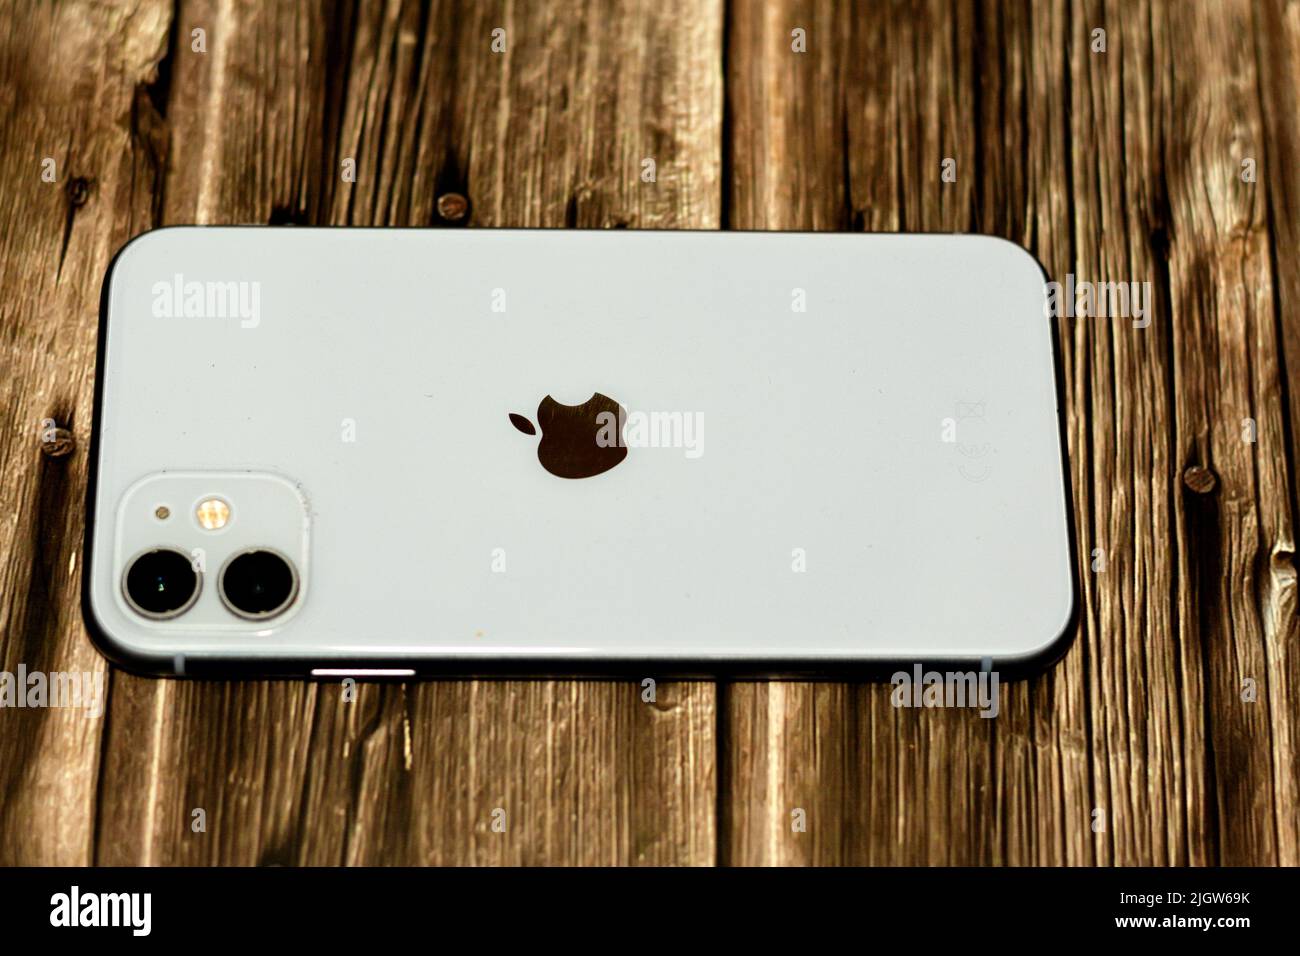 Le Caire, l'Egypte, 11 juin 2022 : Apple iPhone 11 avec facetime, 128GB, 4GB RAM, 4G LTE, blanc, SIM simple et E-SIM, face ID, 6,1 pouces Liquid Retina HD Hig Banque D'Images